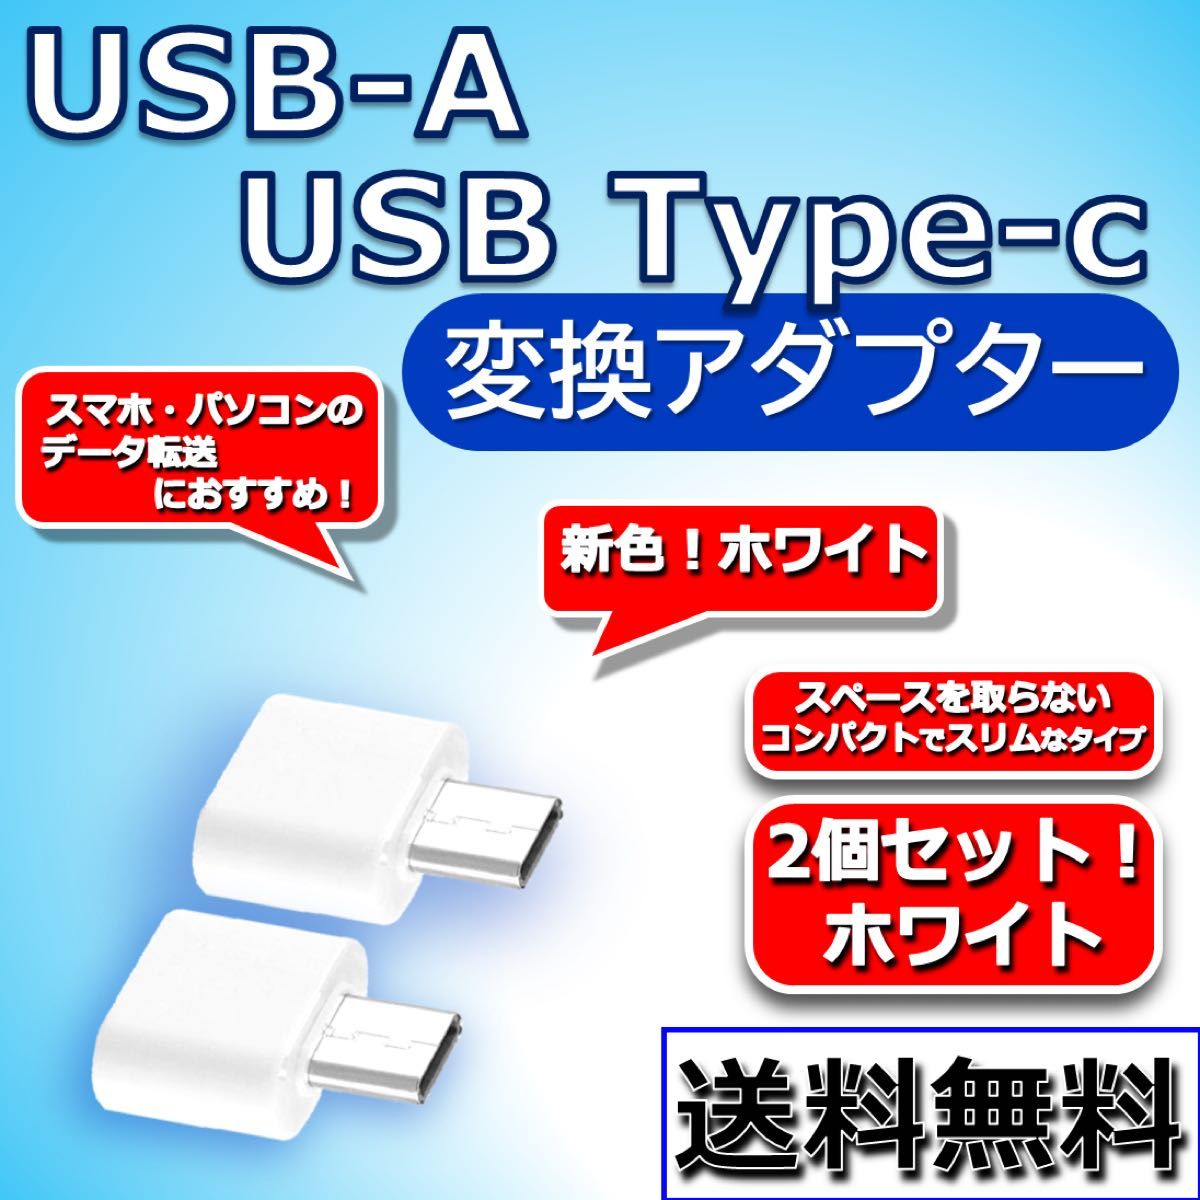 【2個セット!!】USB-A to Type-C 変換アダプター OTG データ転送に！ まとめて購入でさらにおトク！！